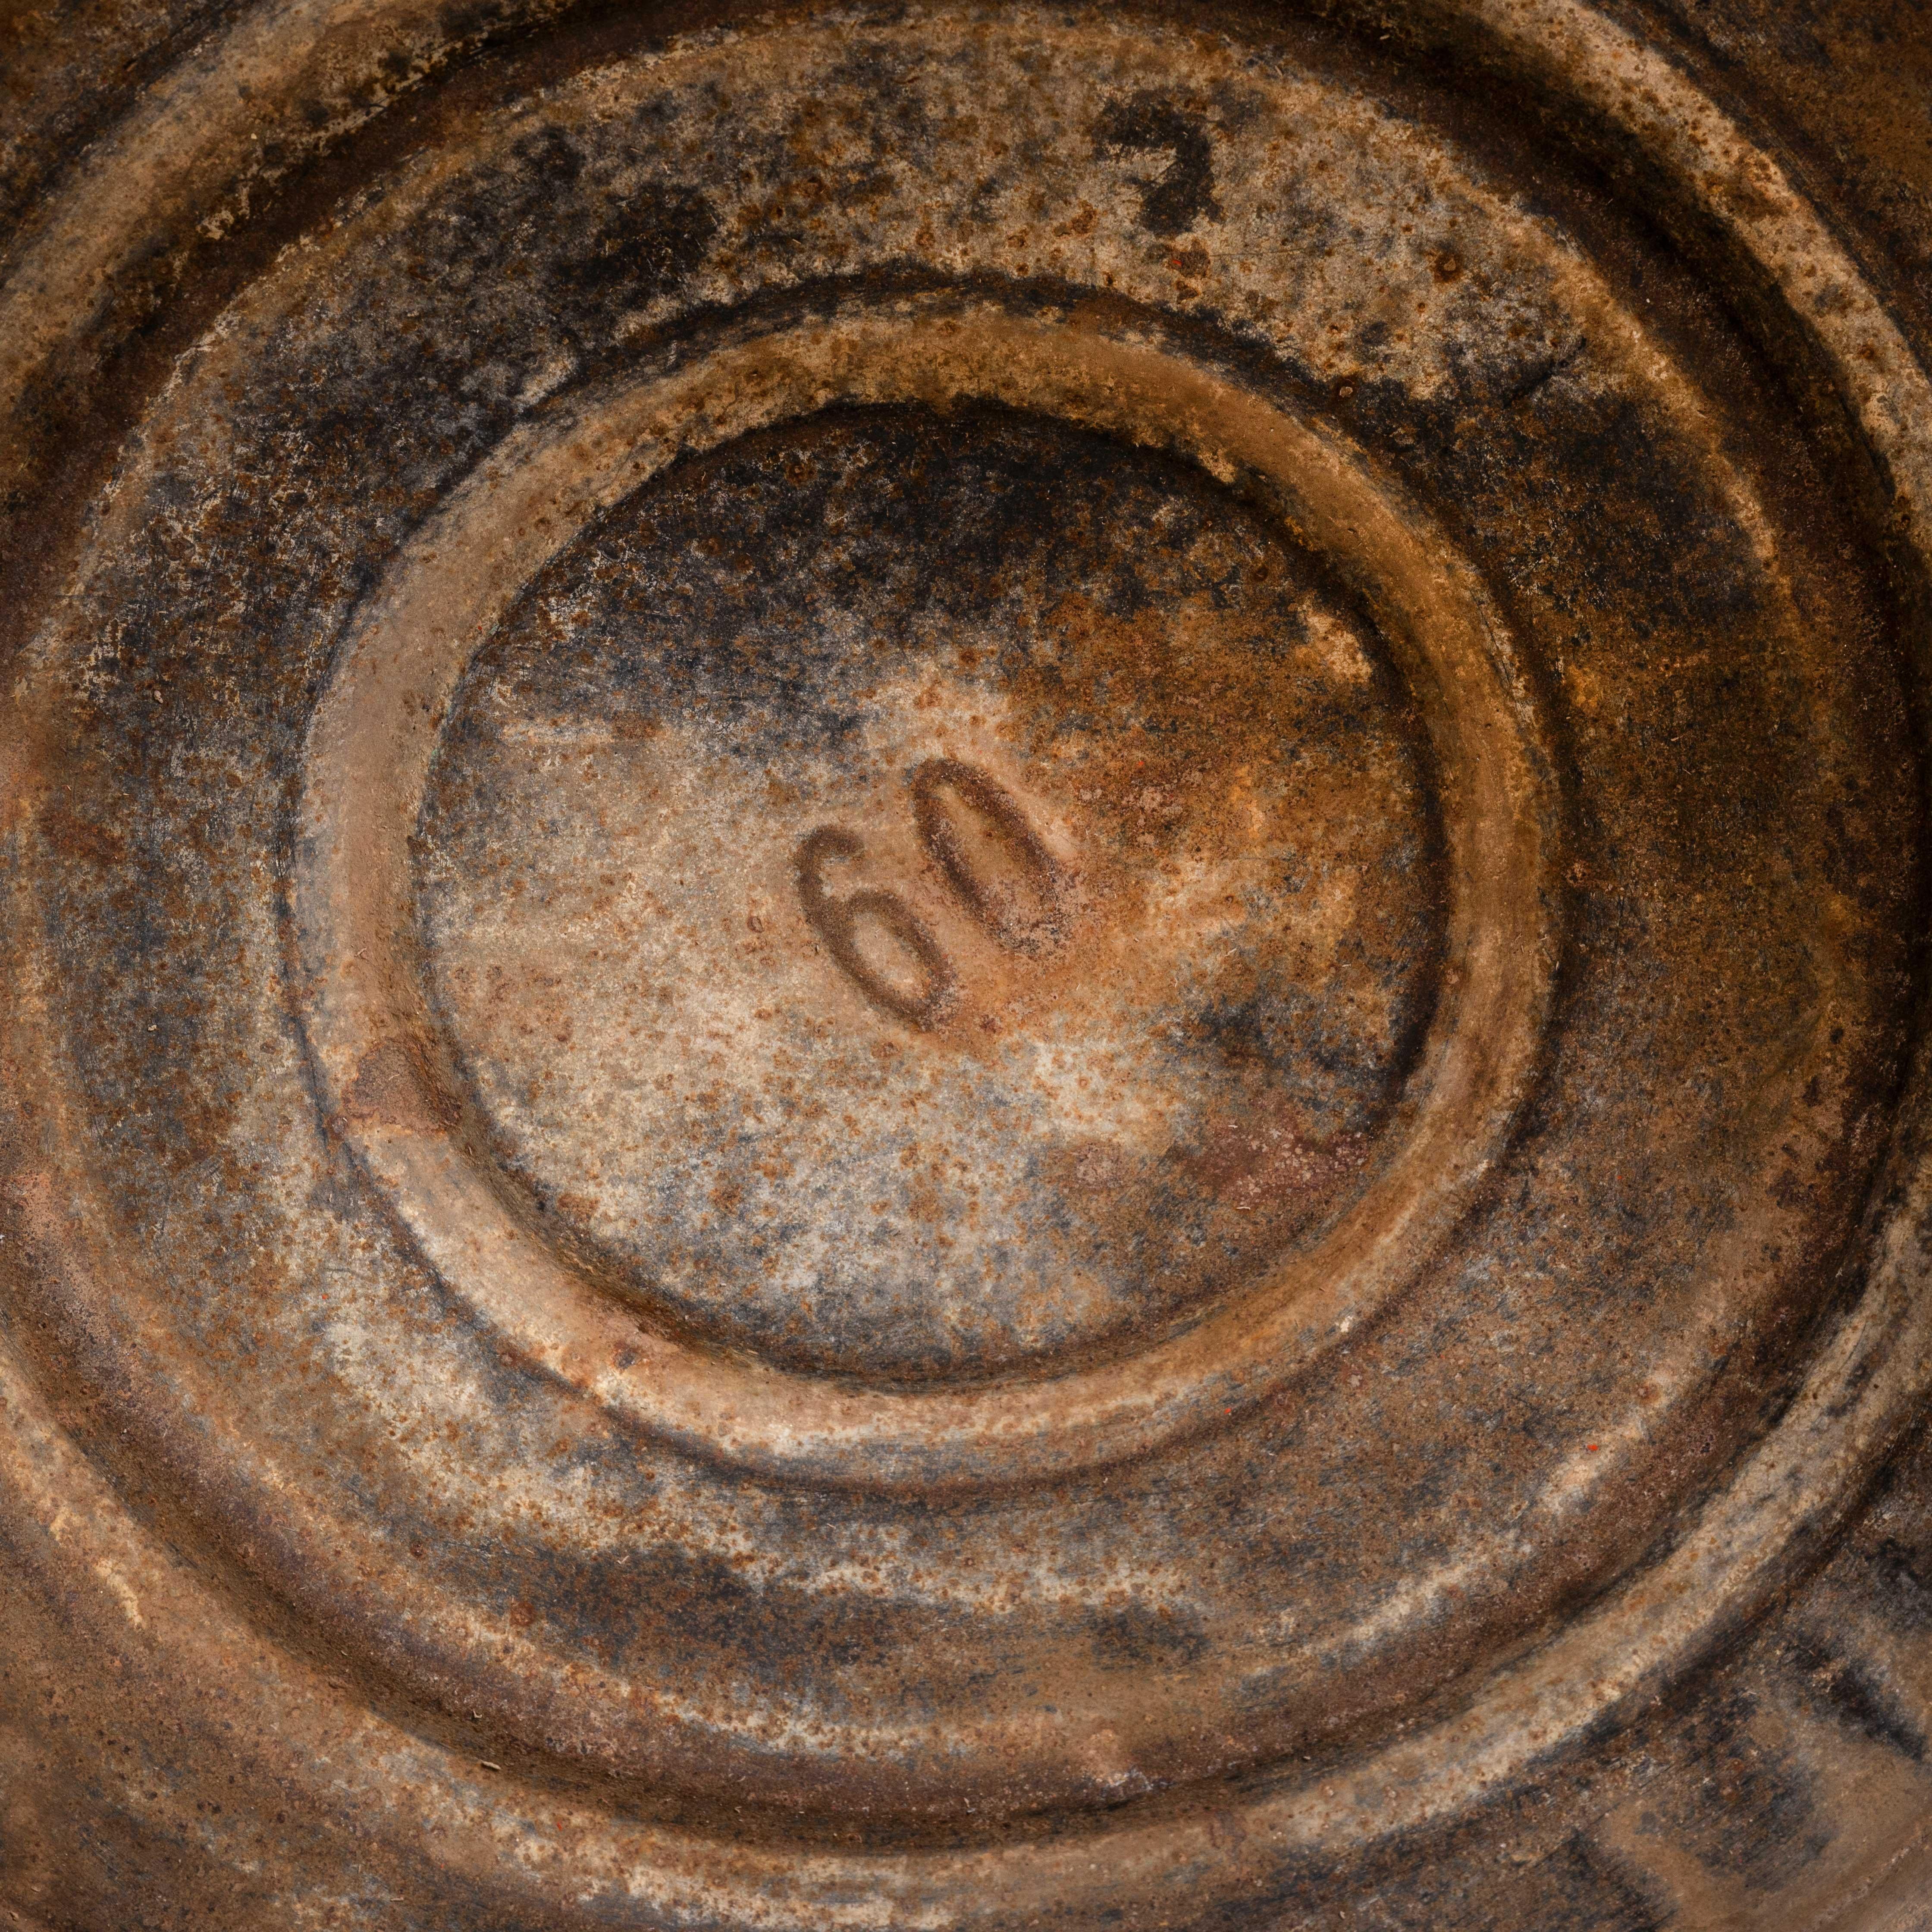 Große französische verzinkte ovale Waschwanne - Pflanzgefäß (1554.1)
Große französische verzinkte ovale Waschwanne - Pflanzgefäß. Brilliante, traditionelle französische Waschschüssel mit zwei Griffen, ideal als Pflanzgefäß oder